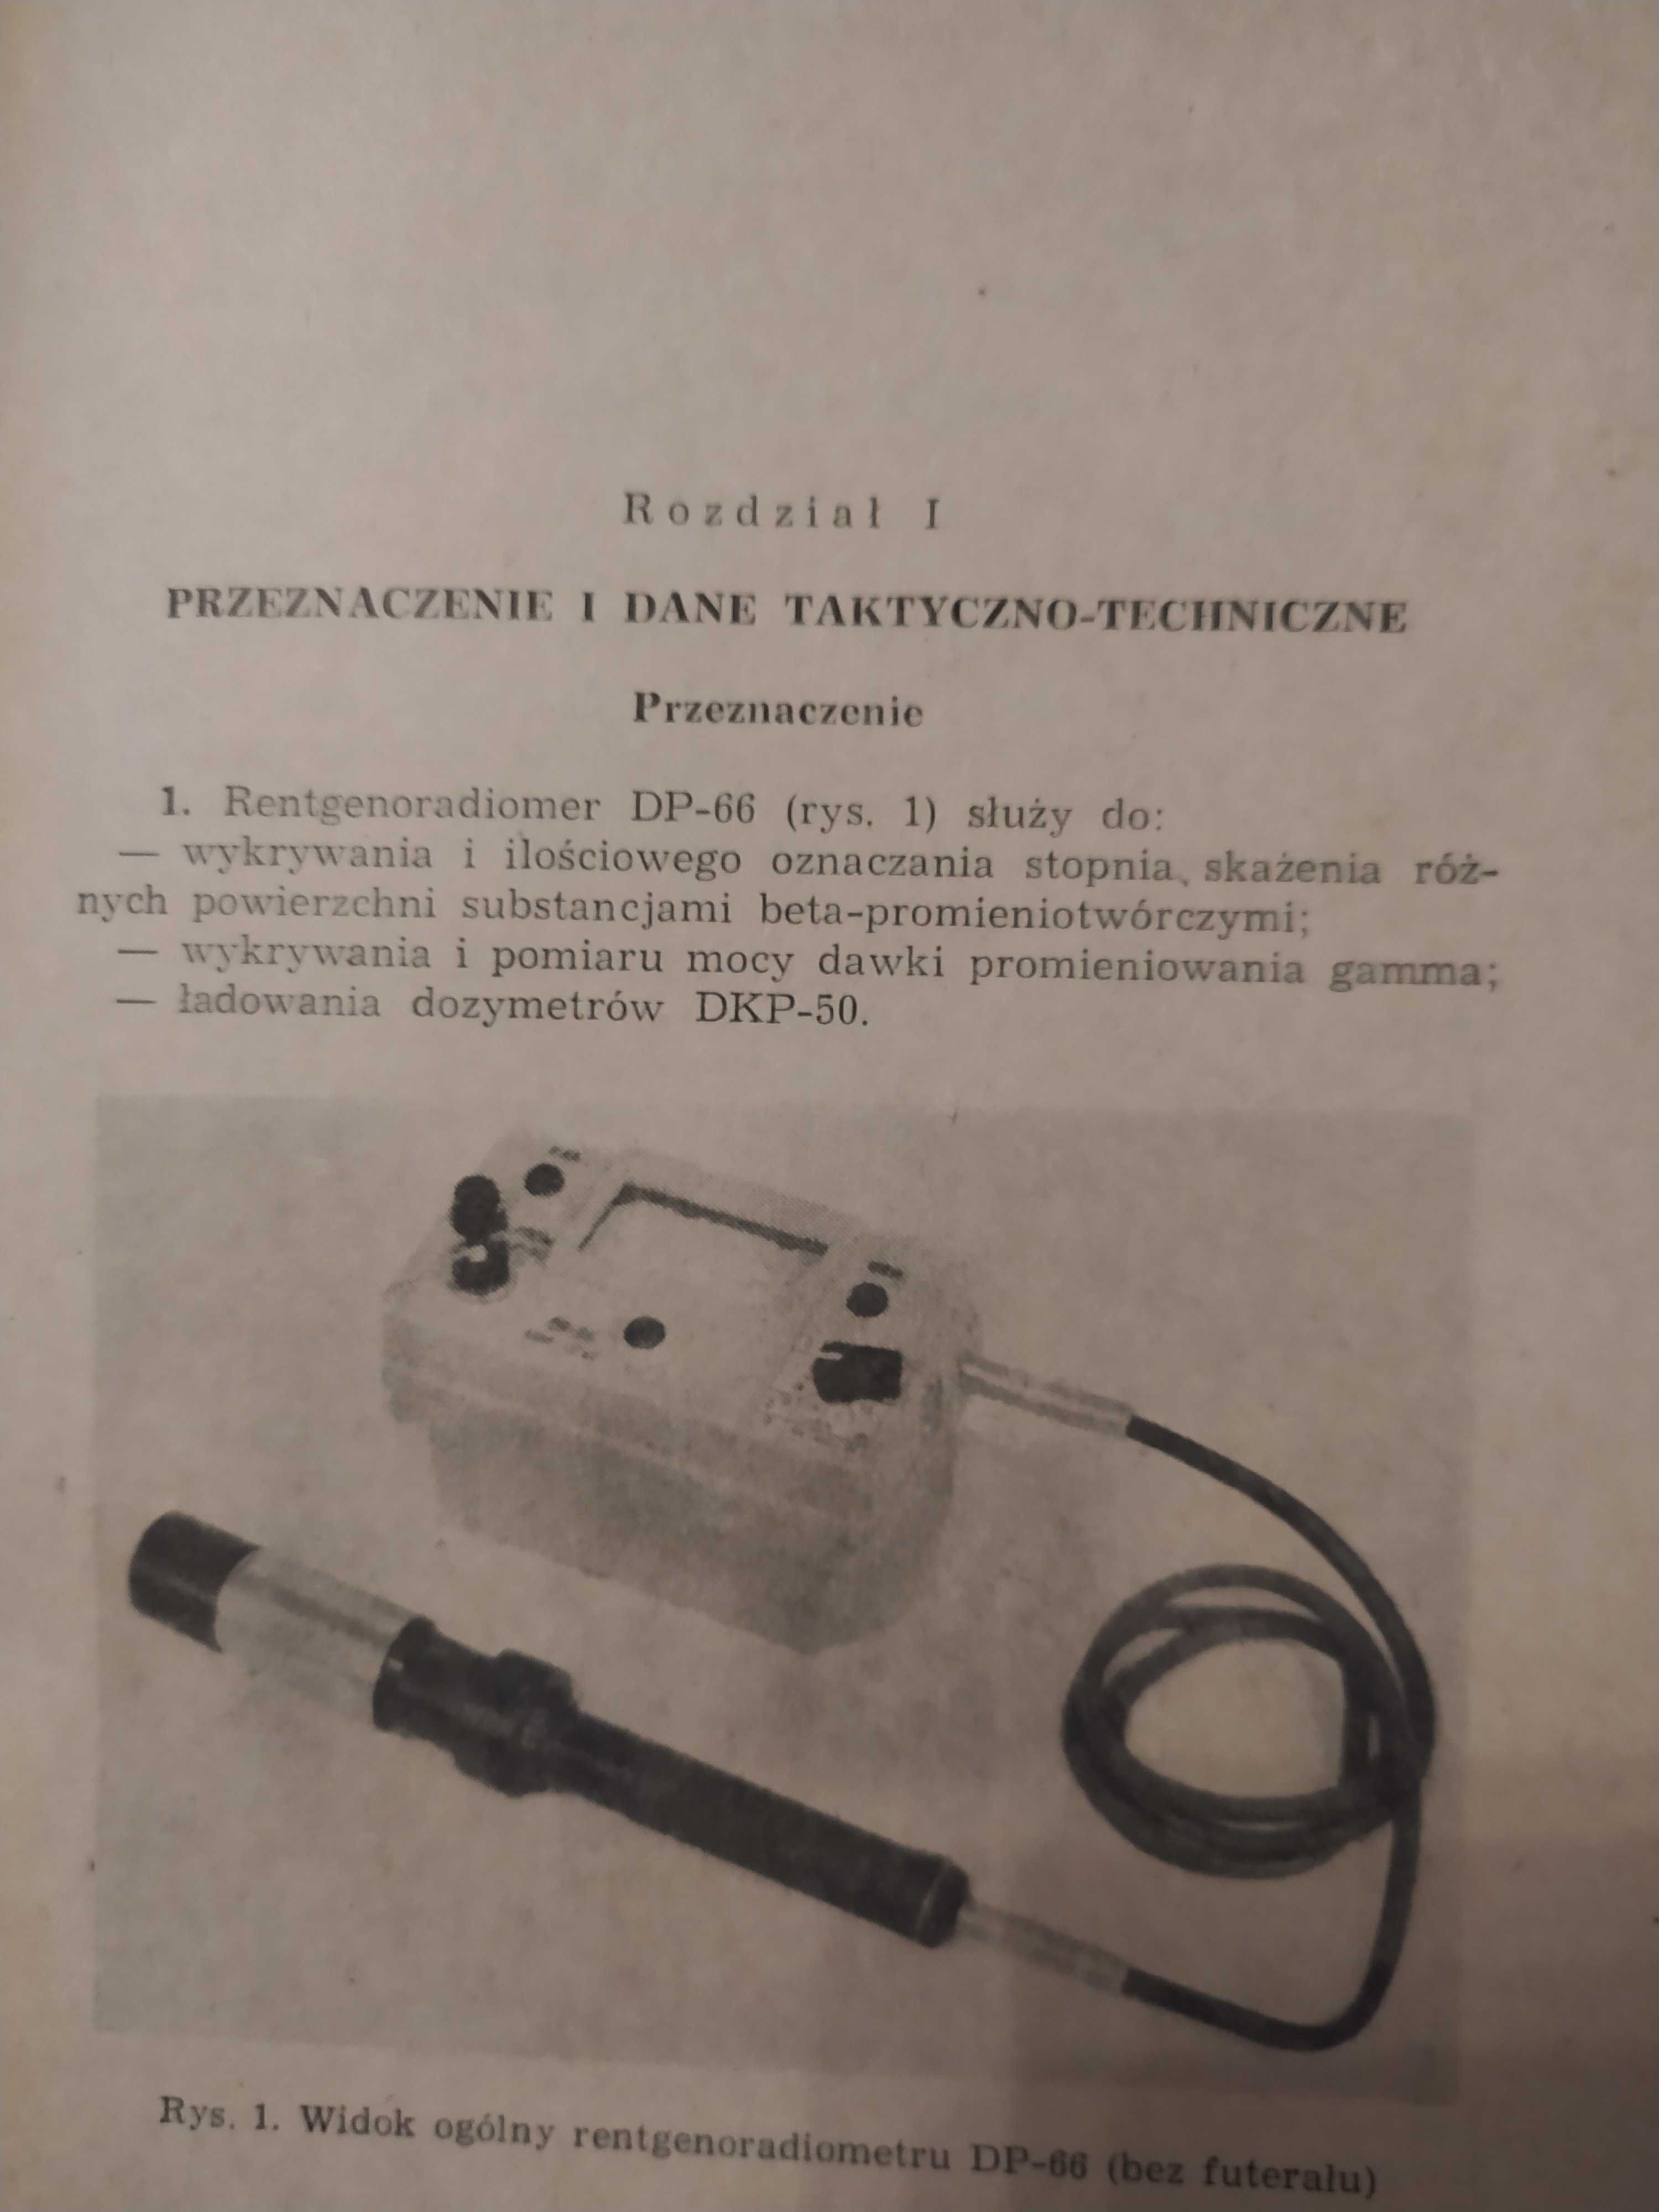 Instrukcja Wojsk Chemicznych rentgenoradiometr DP-66